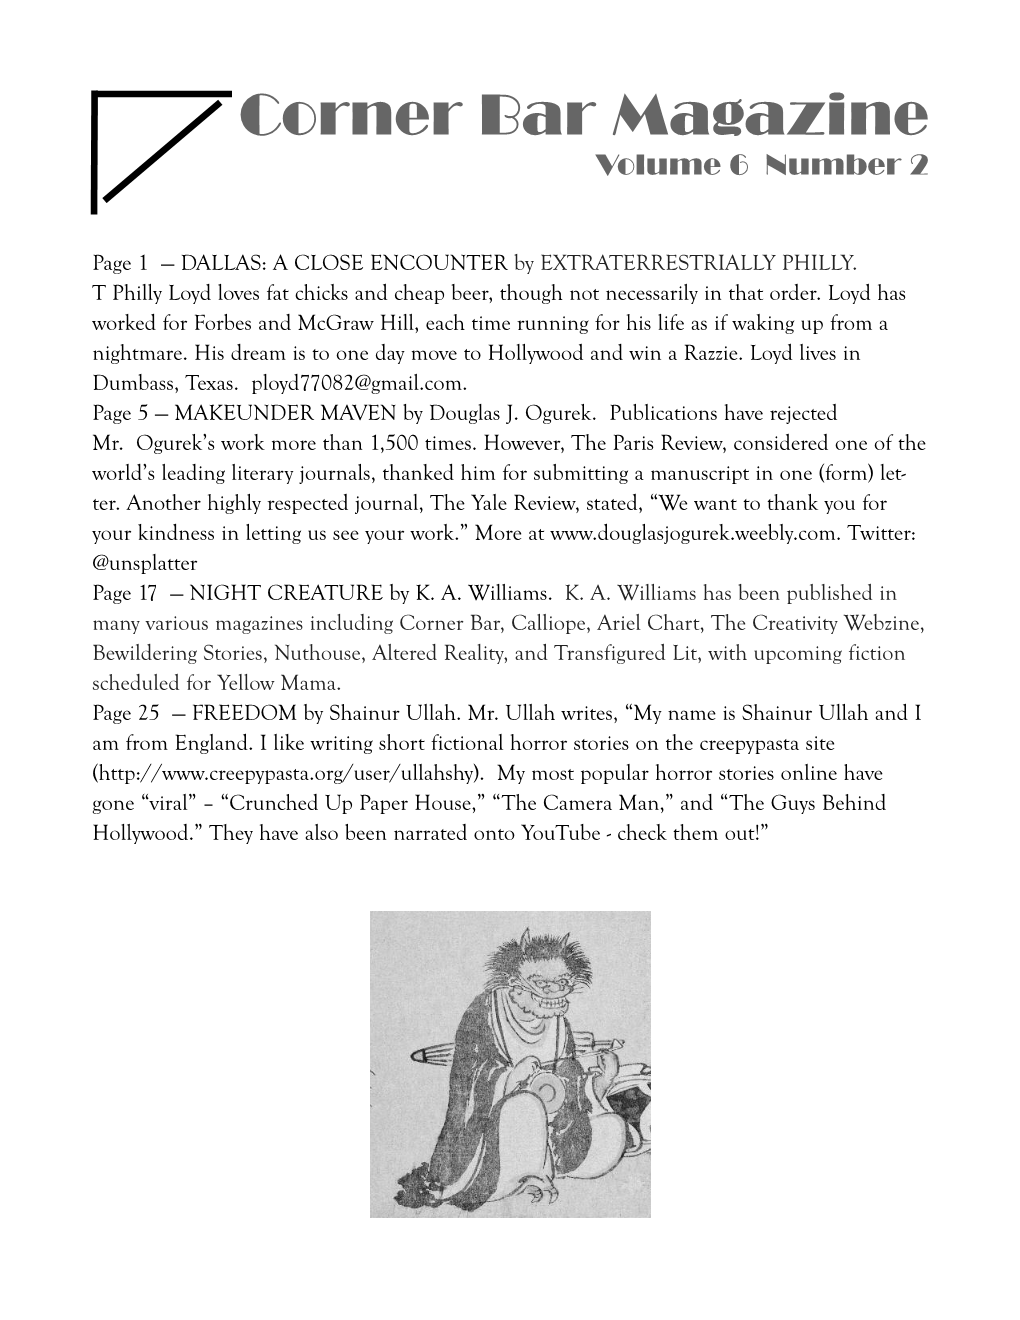 Yuleblot December 20 Volume 6 Issue 2